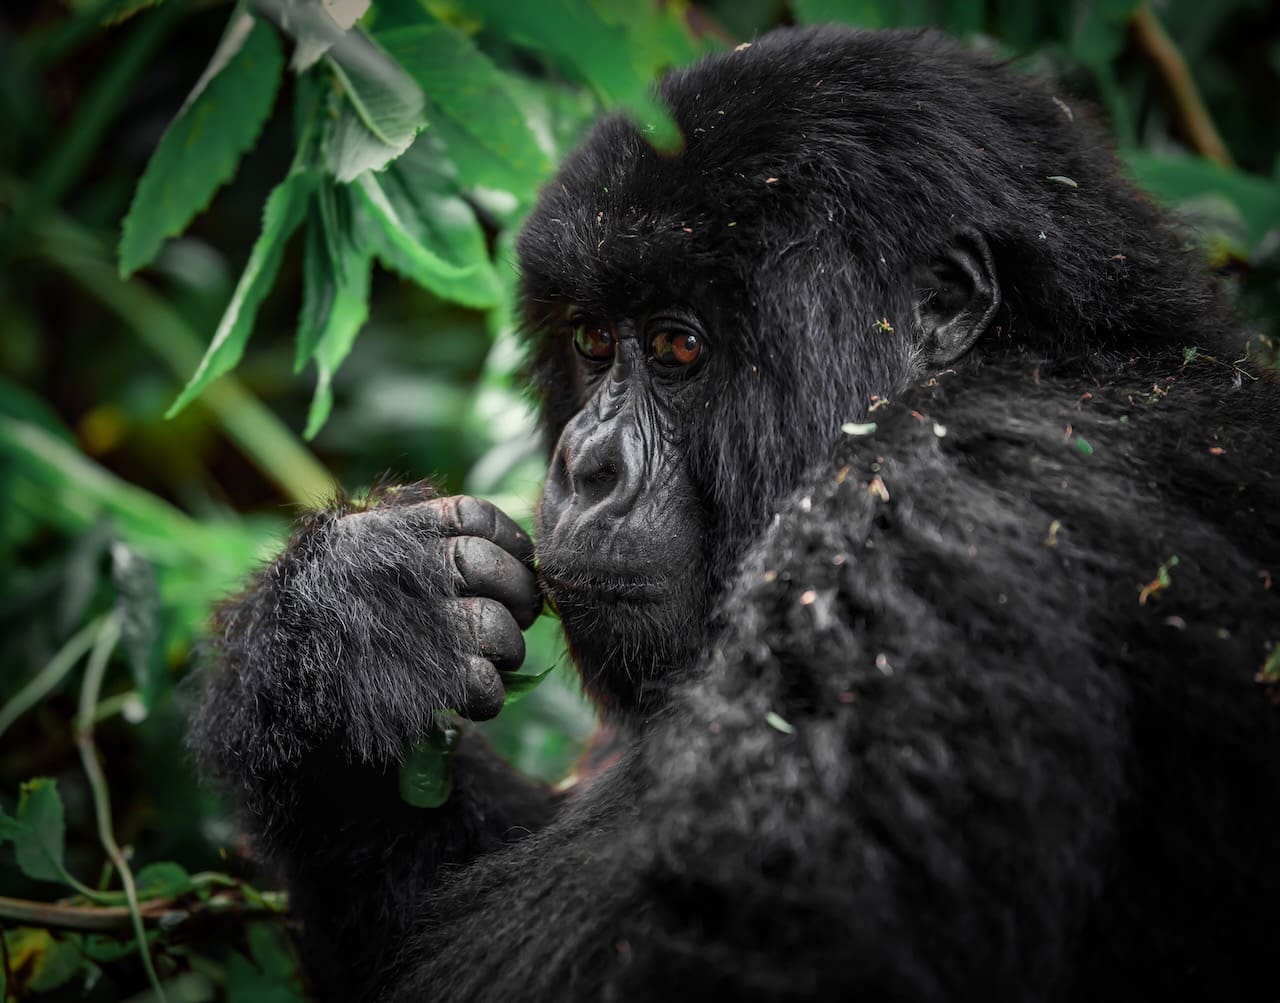 A mountain gorilla seen while trekking in Rwanda